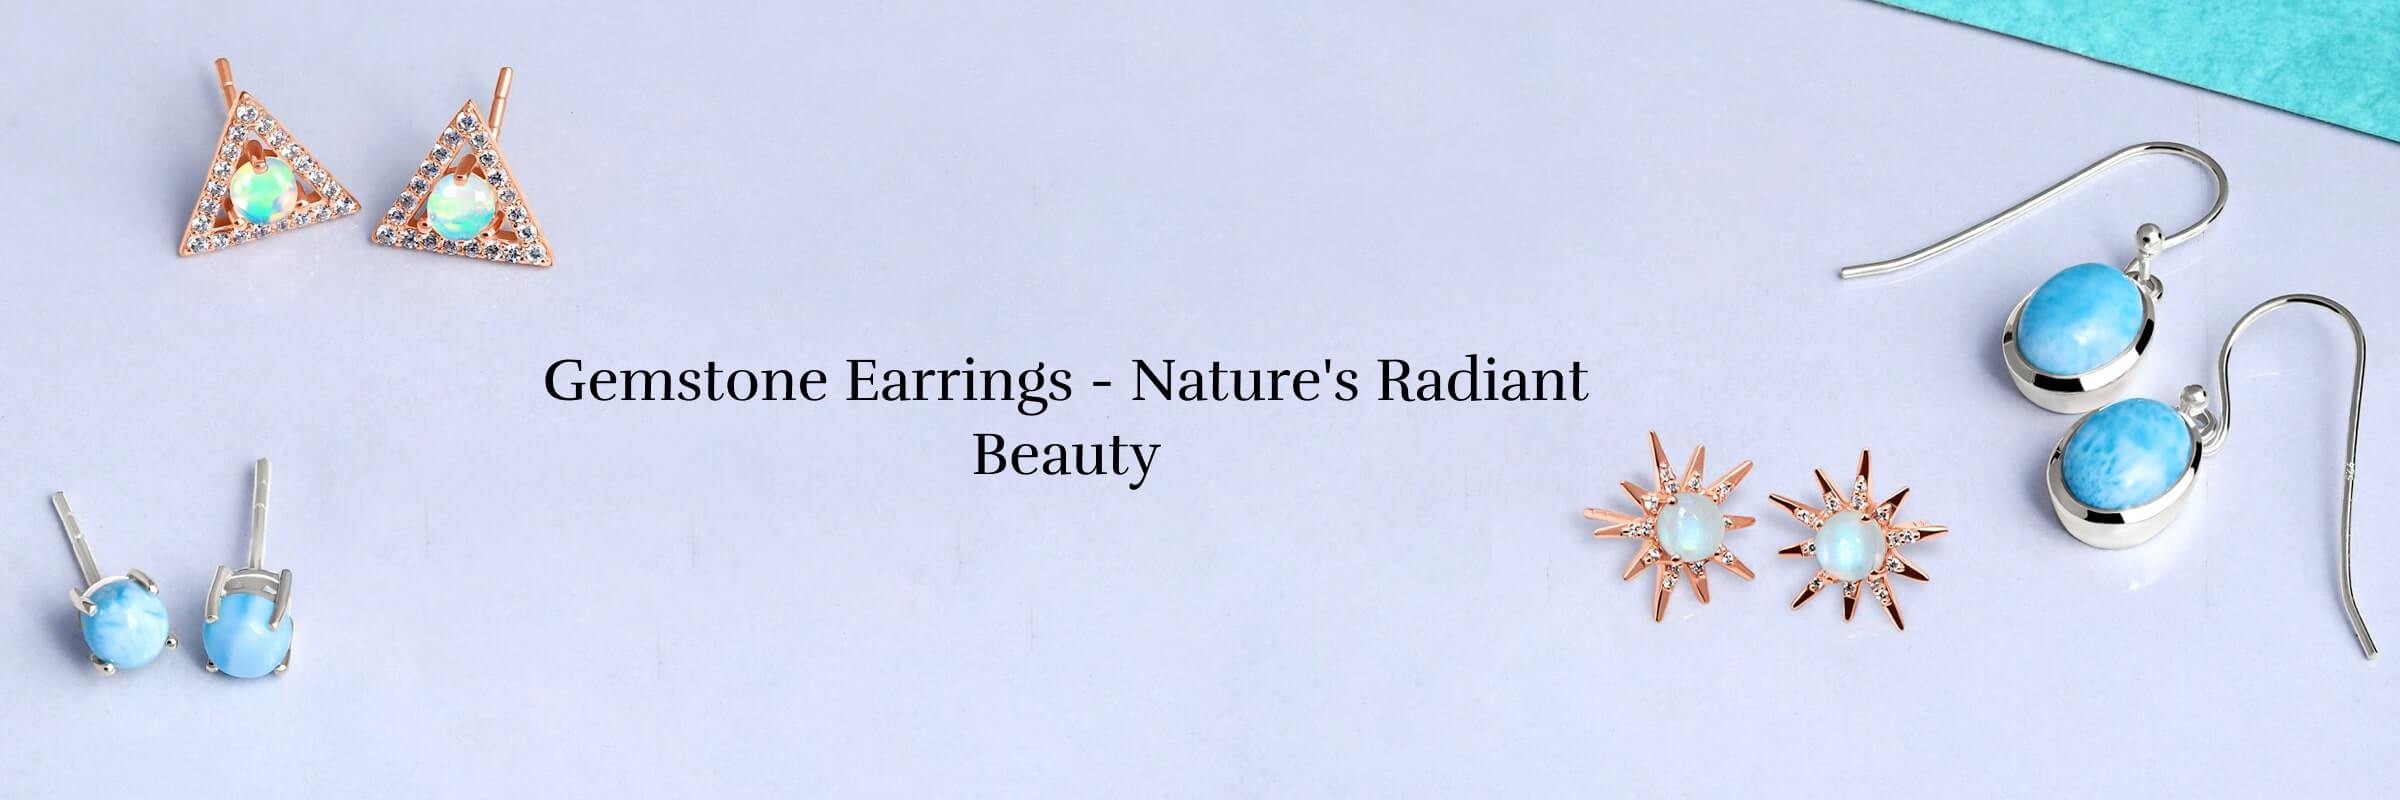 Gemstones that work best as Gemstone earrings